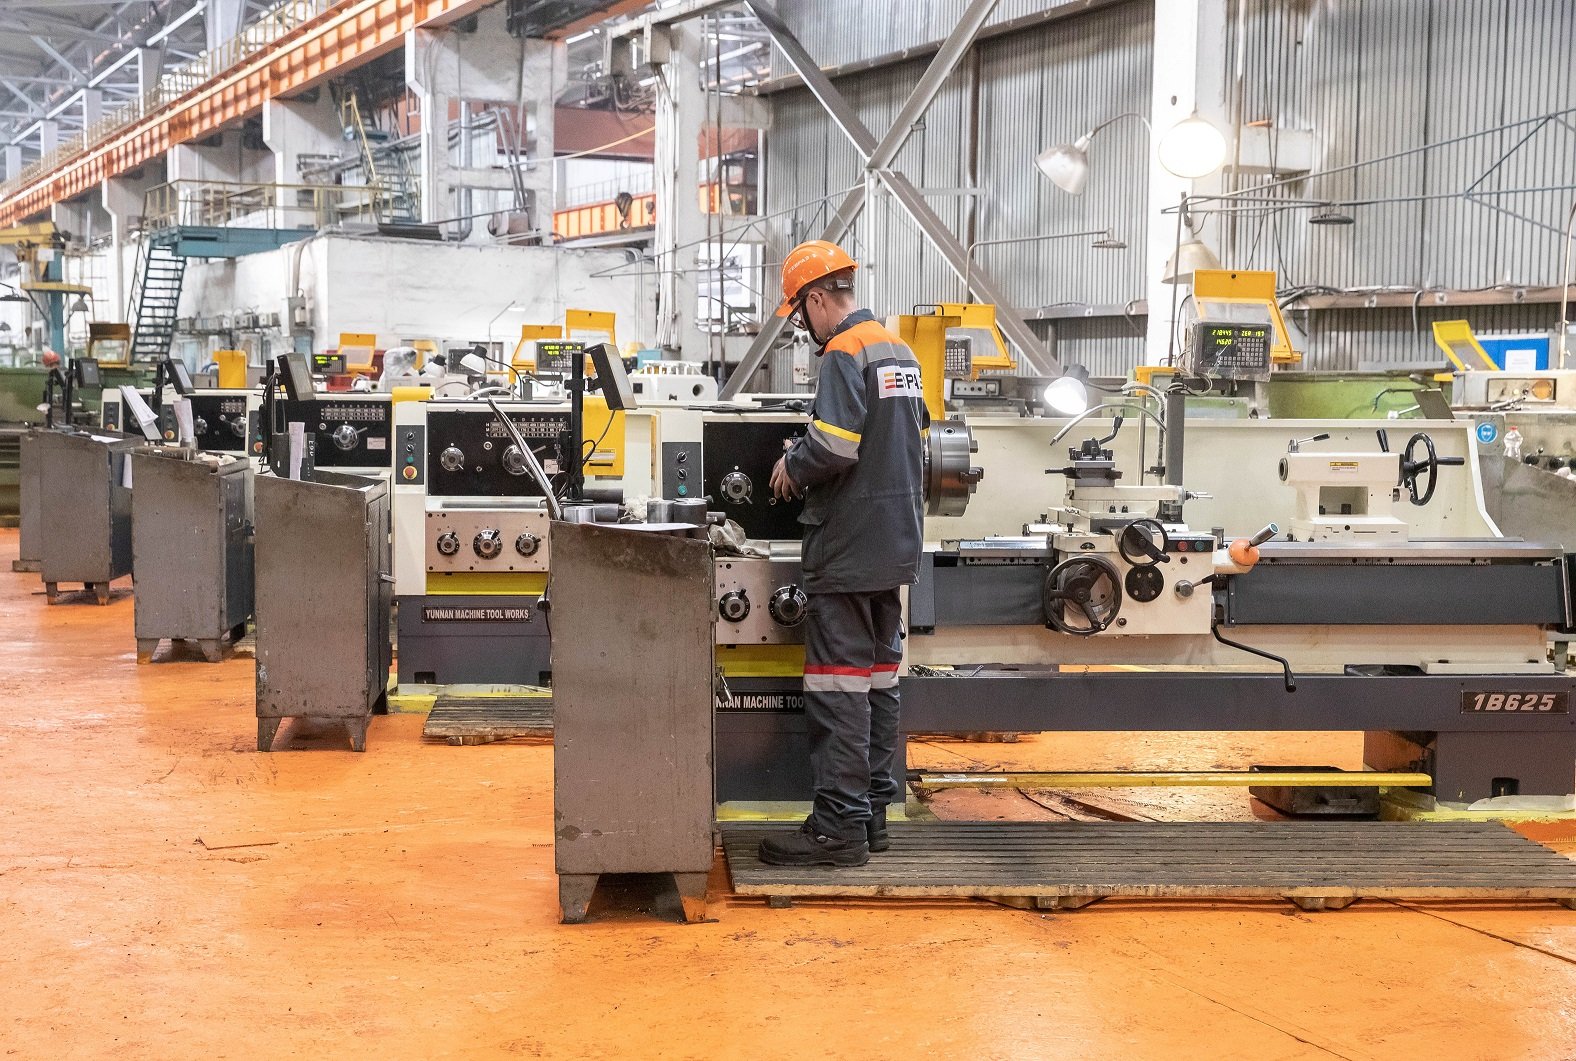 ЕВРАЗ НТМК инвестировал в приобретение автоматизированных токарно-винторезных станков более 30 млн рублей